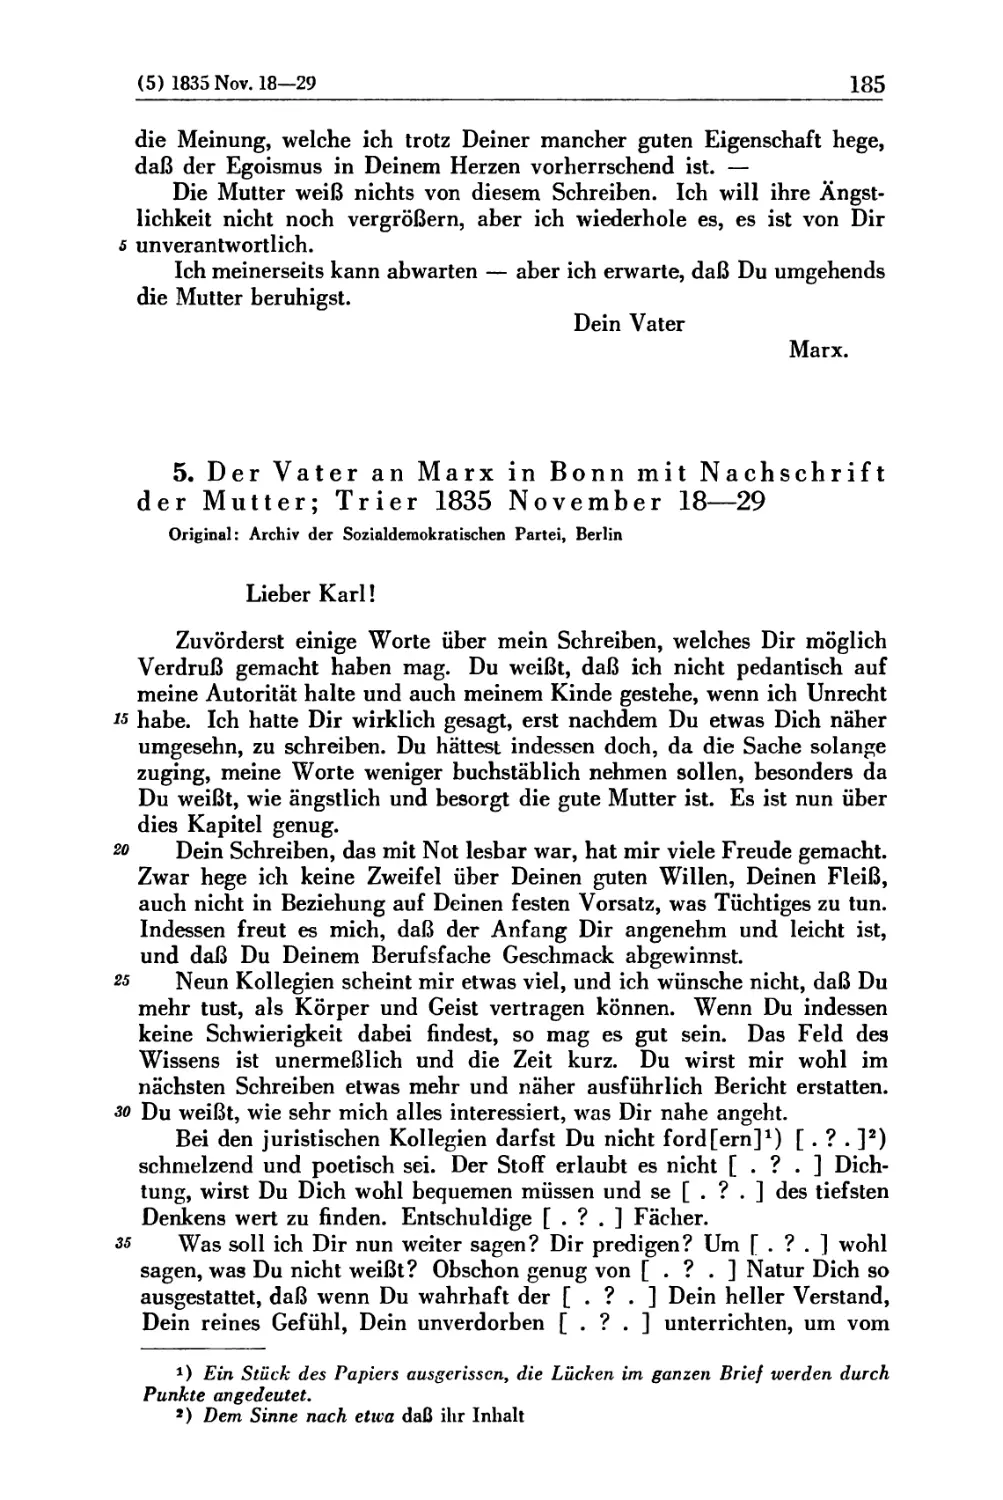 5. Der Vater an Marx in Bonn mit Nachschrift der Mutter; Trier 1835 November 18 — 29